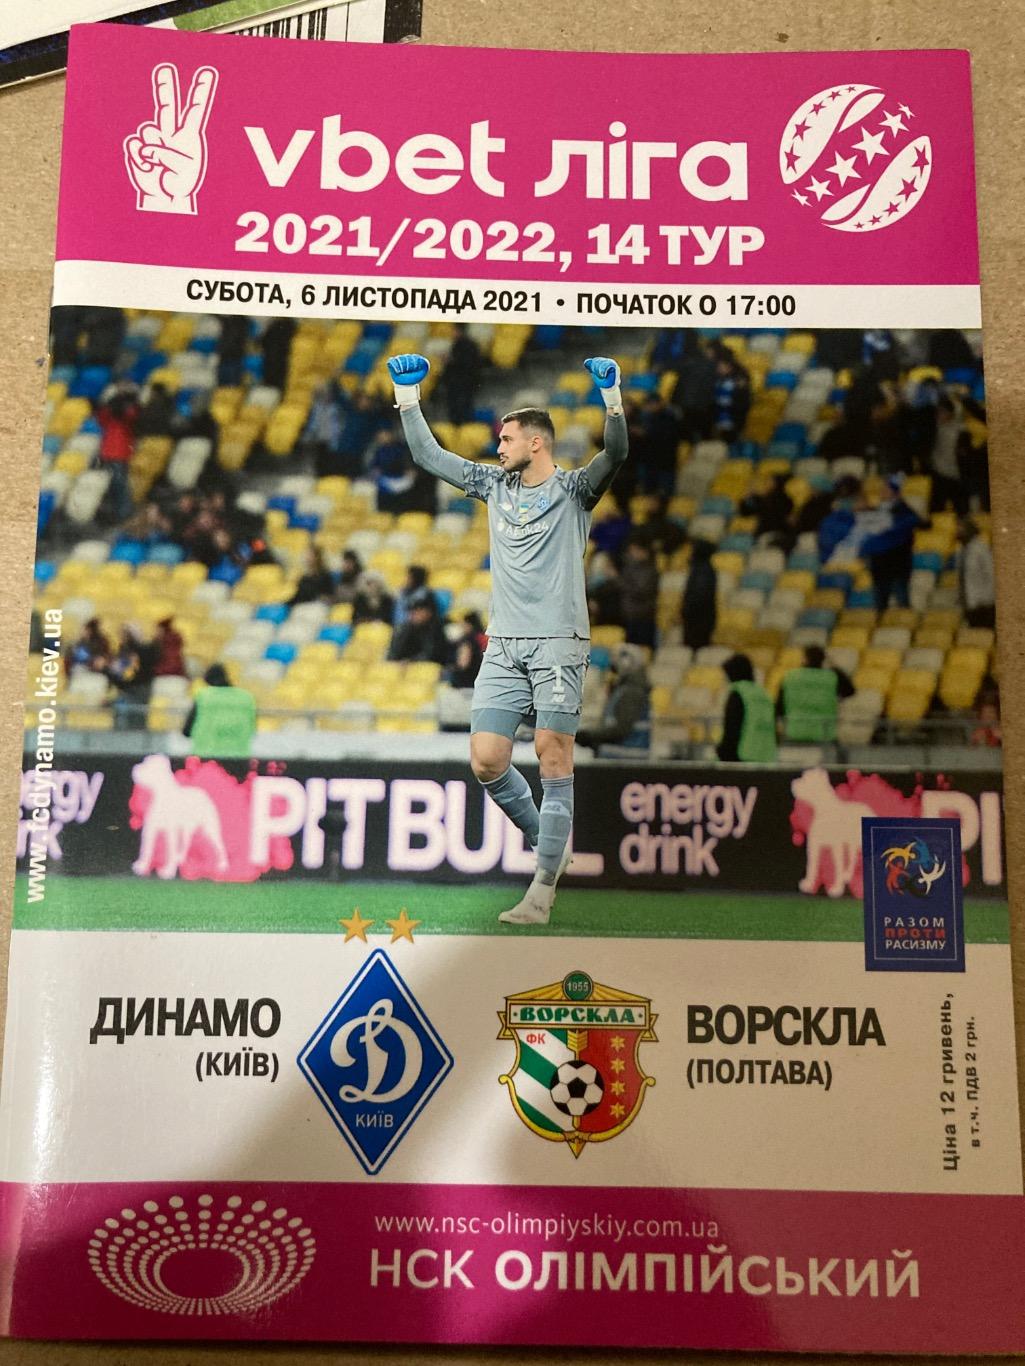 Динамо - Ворскла 2021/2022